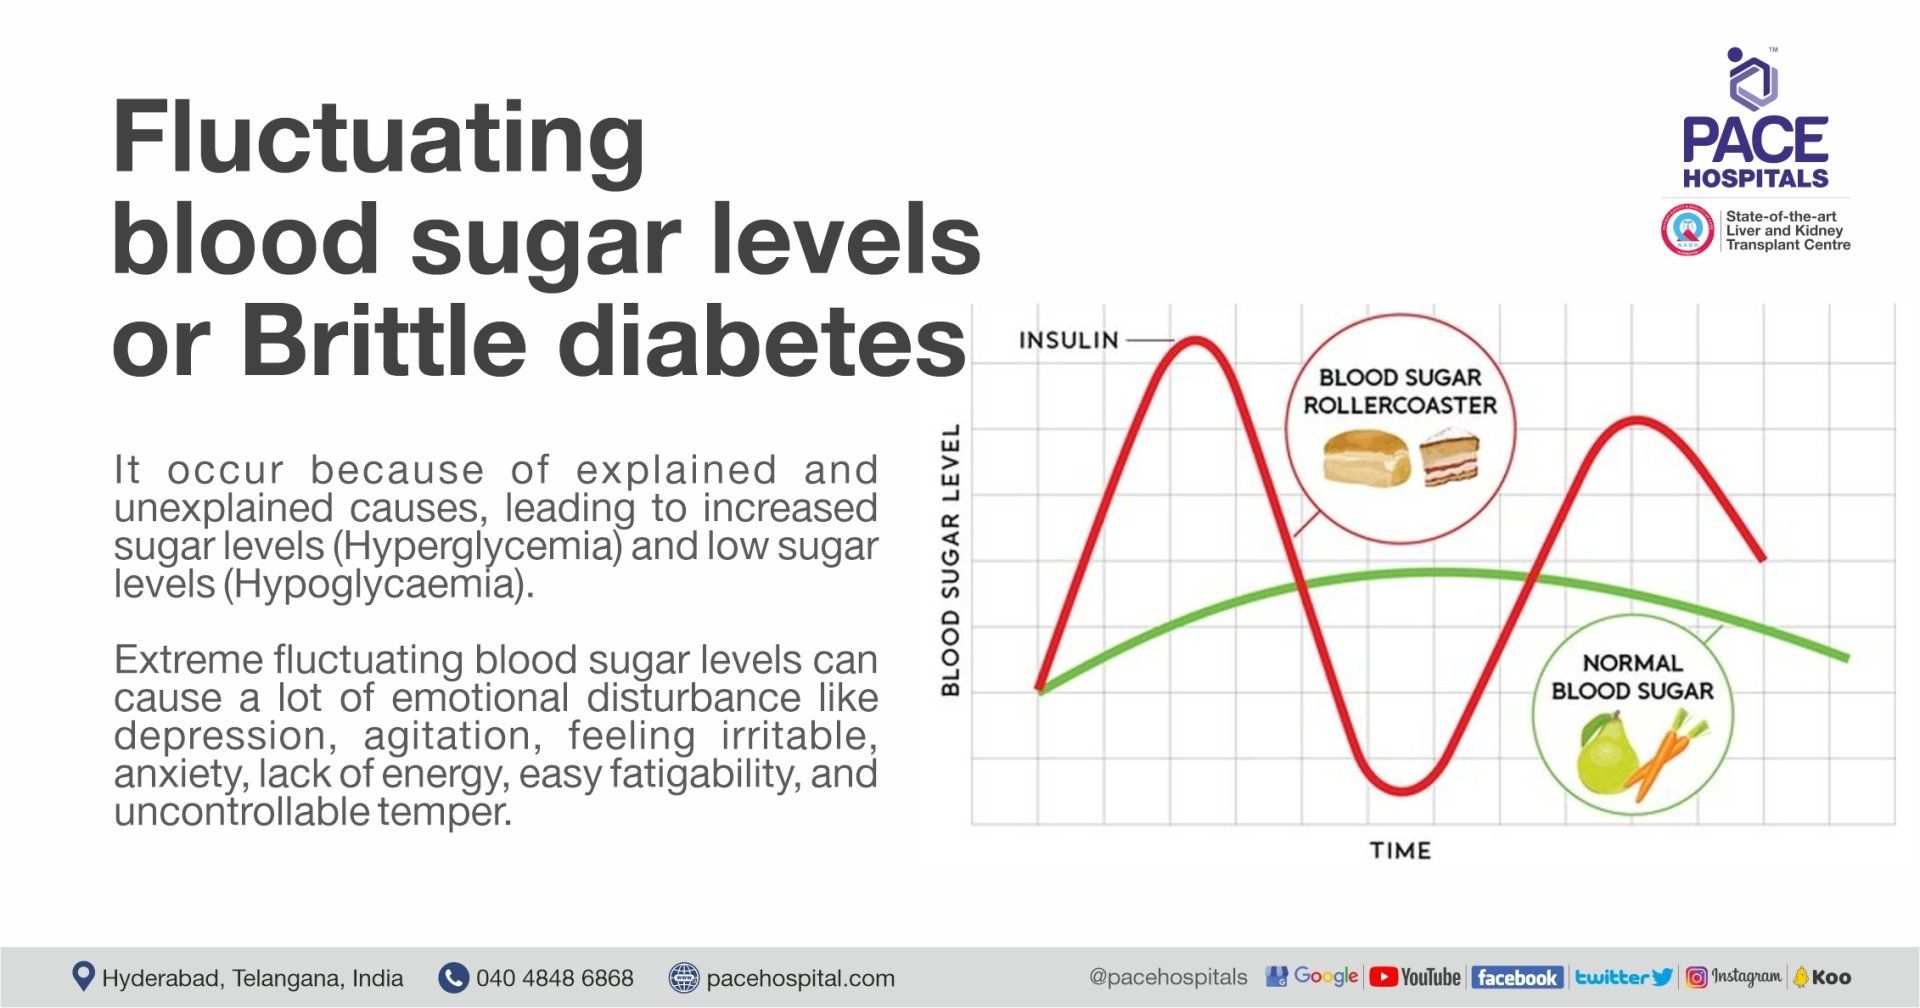 glucose reading ranges